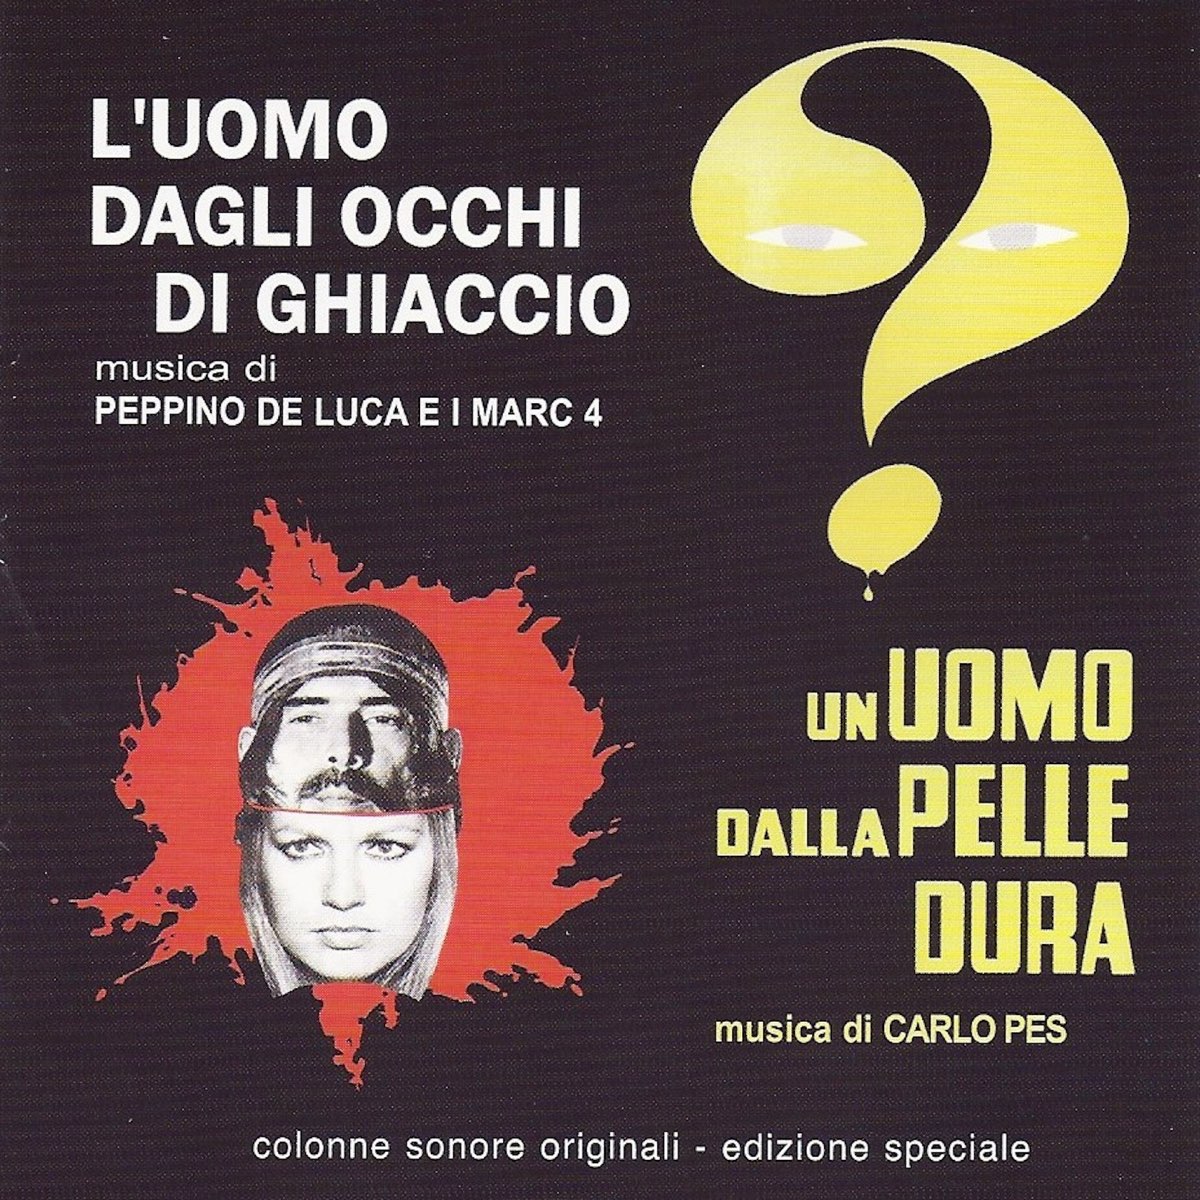 L'Uomo Dagli Occhi Di Ghiaccio/ Un Uomo Dalla Pelle Dura (original motion  picture soundtracks) by Peppino De Luca & i Marc 4 & Carlo Pes on Apple  Music